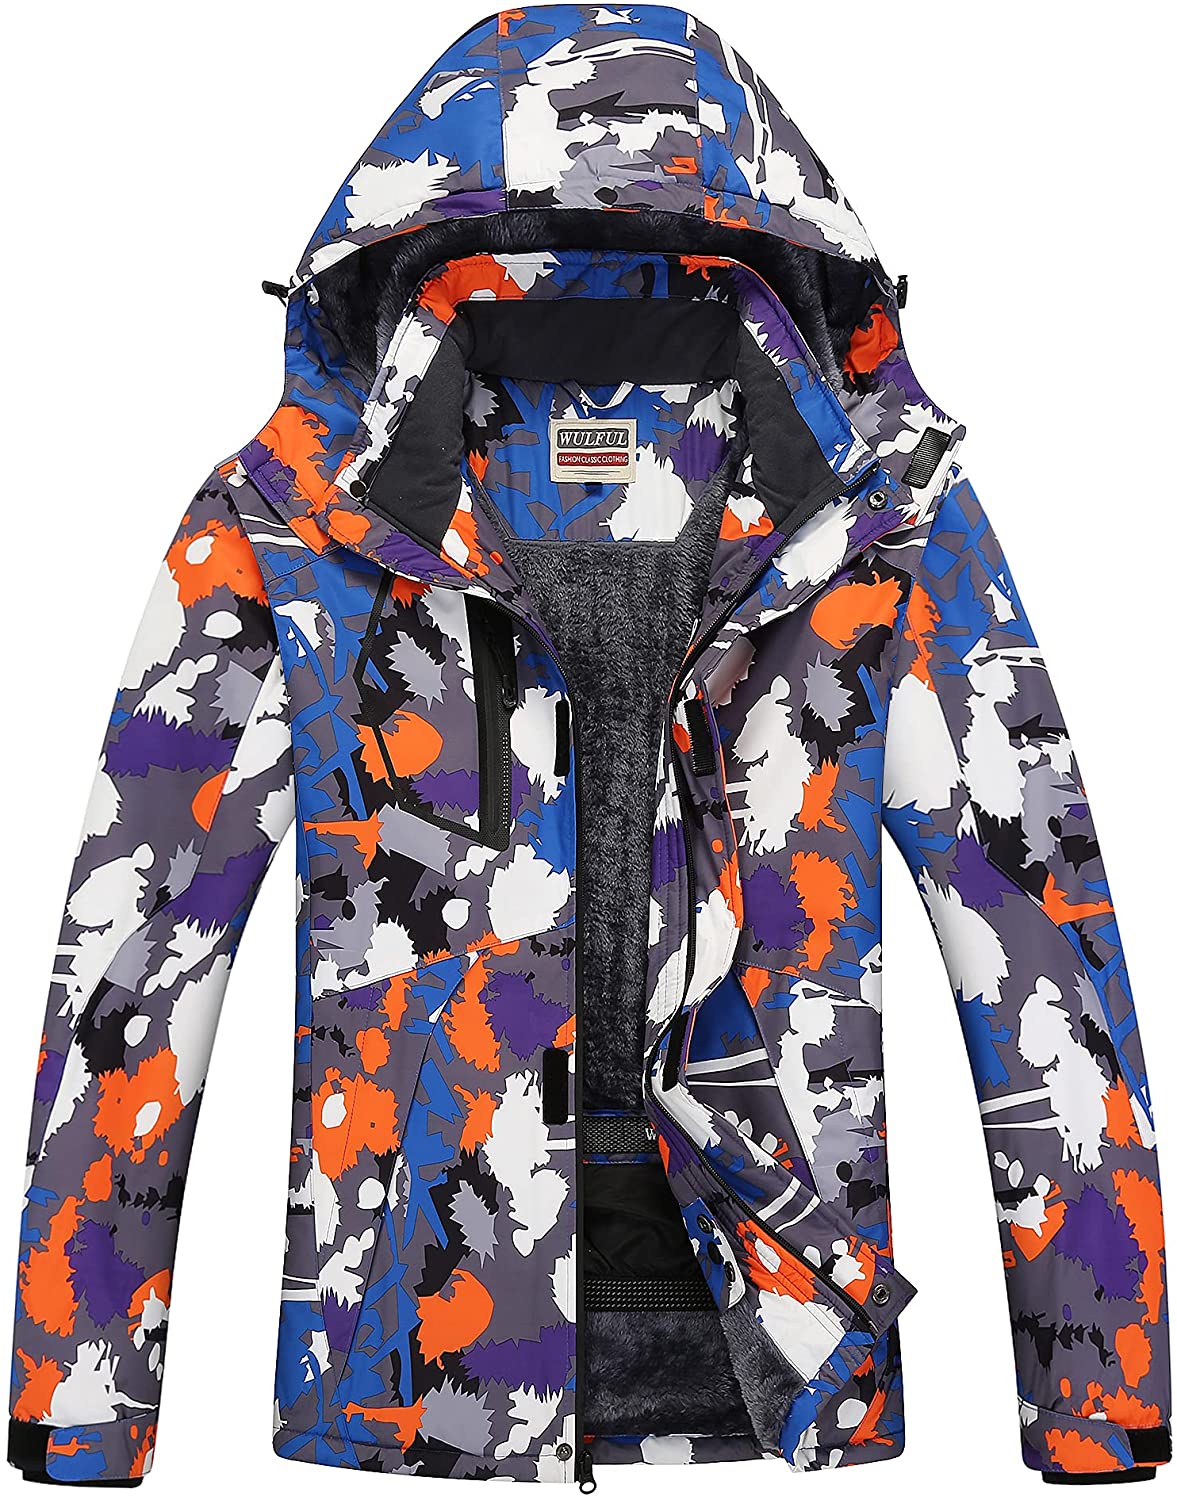 WULFUL Men's Waterproof Ski Jacket Warm Winter Snow Coat Mountain Windbreaker Hooded Raincoat 